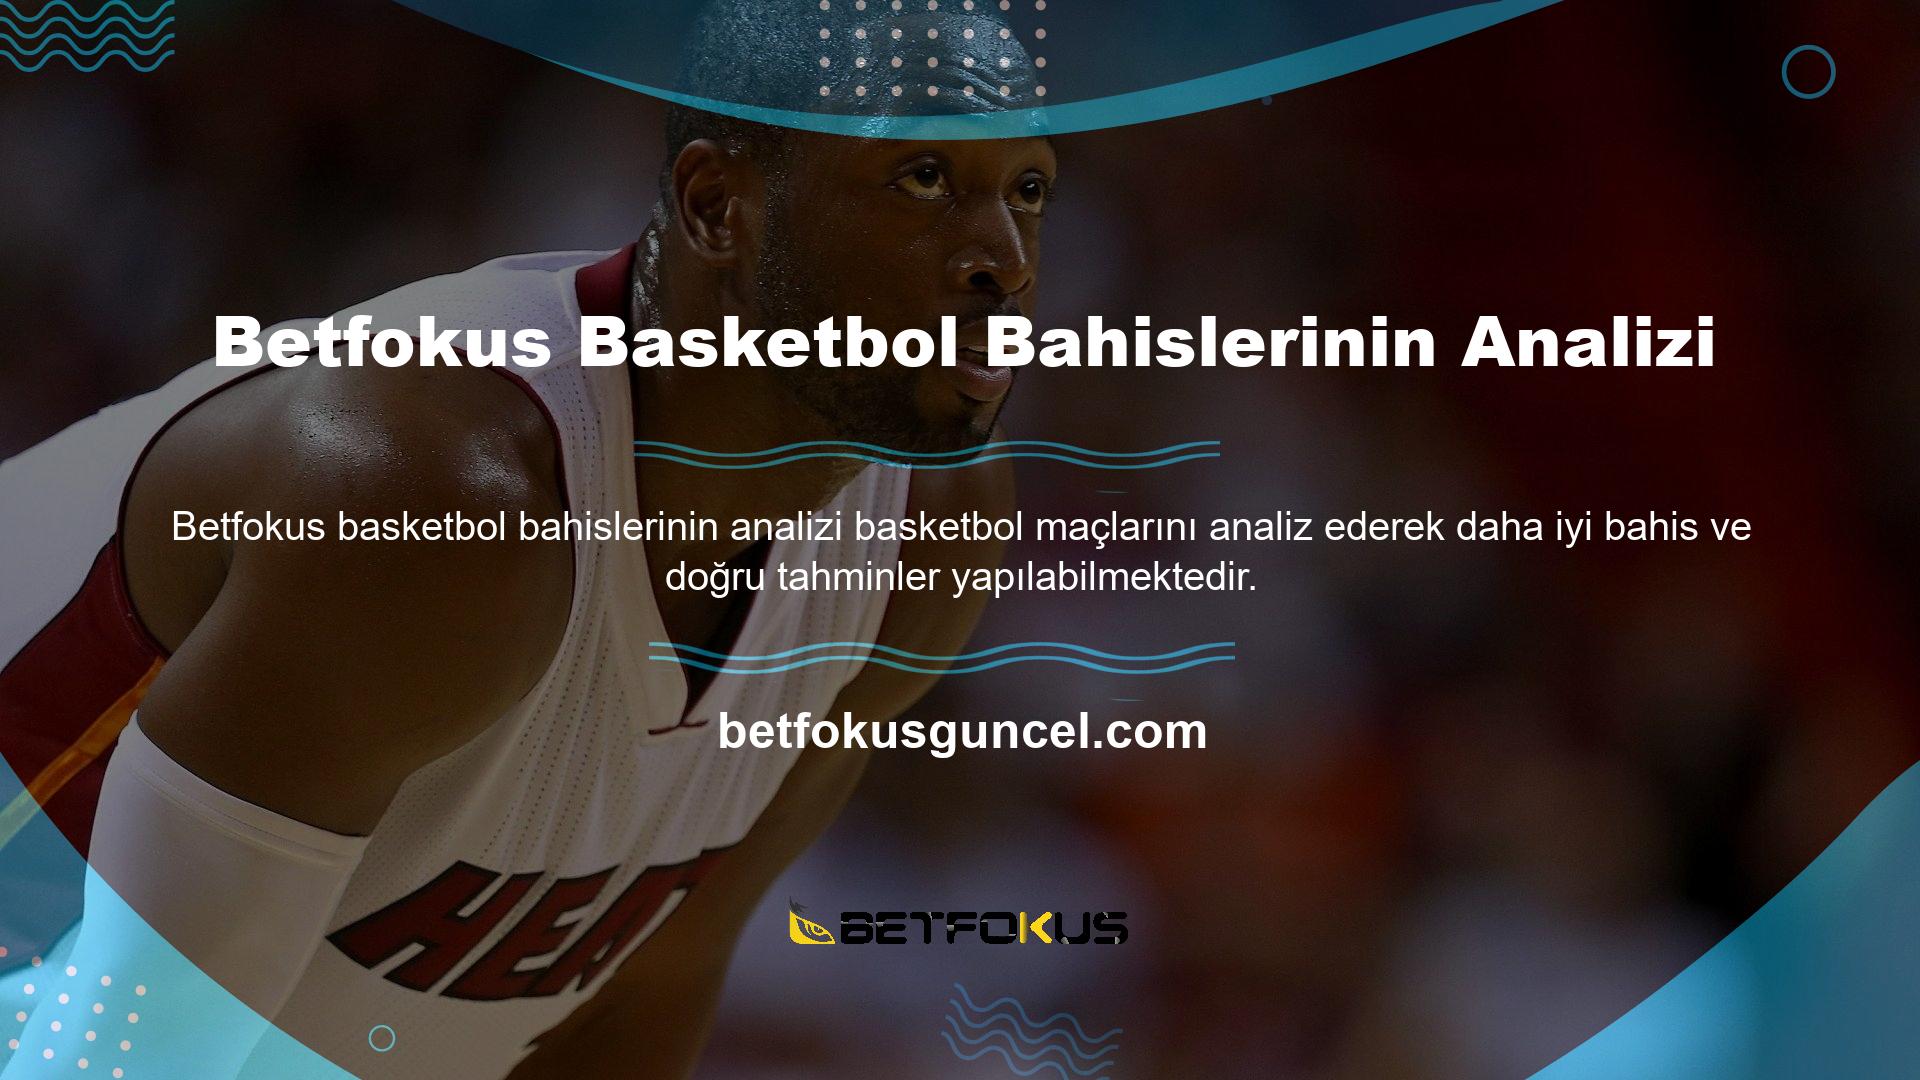 Betfokus basketbol bahis analizinin parametreleri, bahis yorumlaması, geçmiş maçlardaki oyuncu istatistikleri, takım organizasyonu, çeyrek değerlendirmesi ve takım performansından oluşur